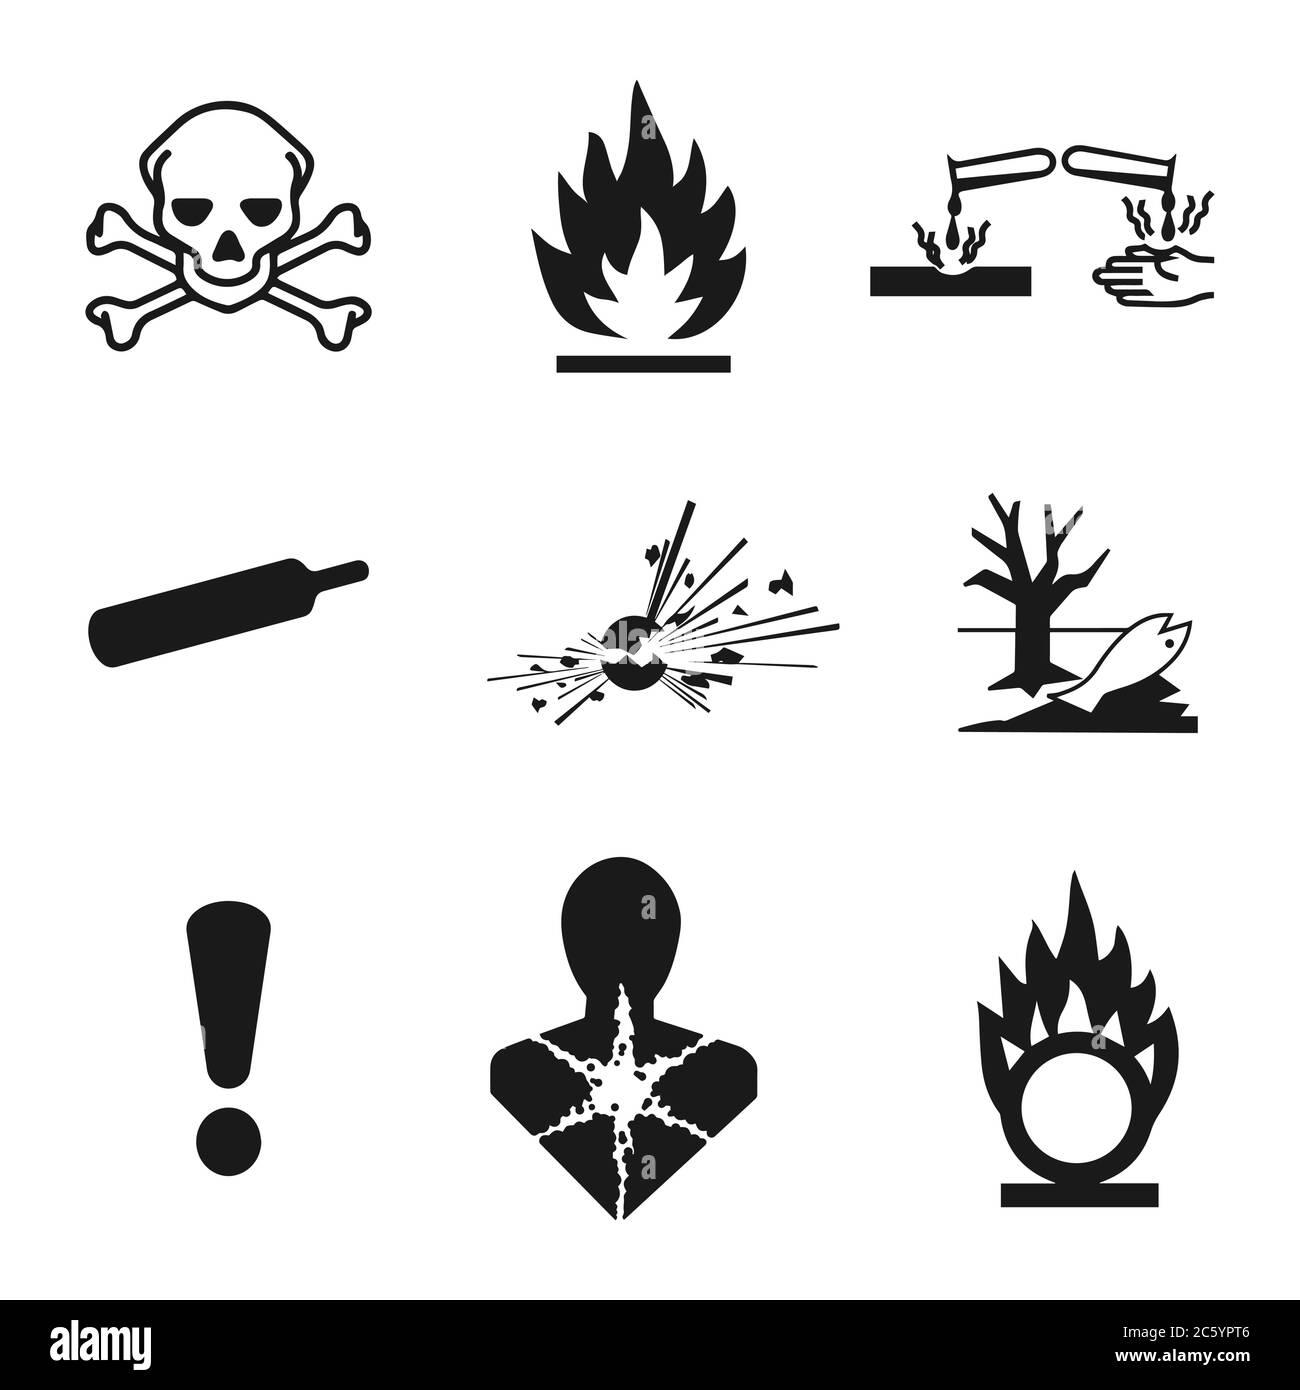 danger symbols black and white